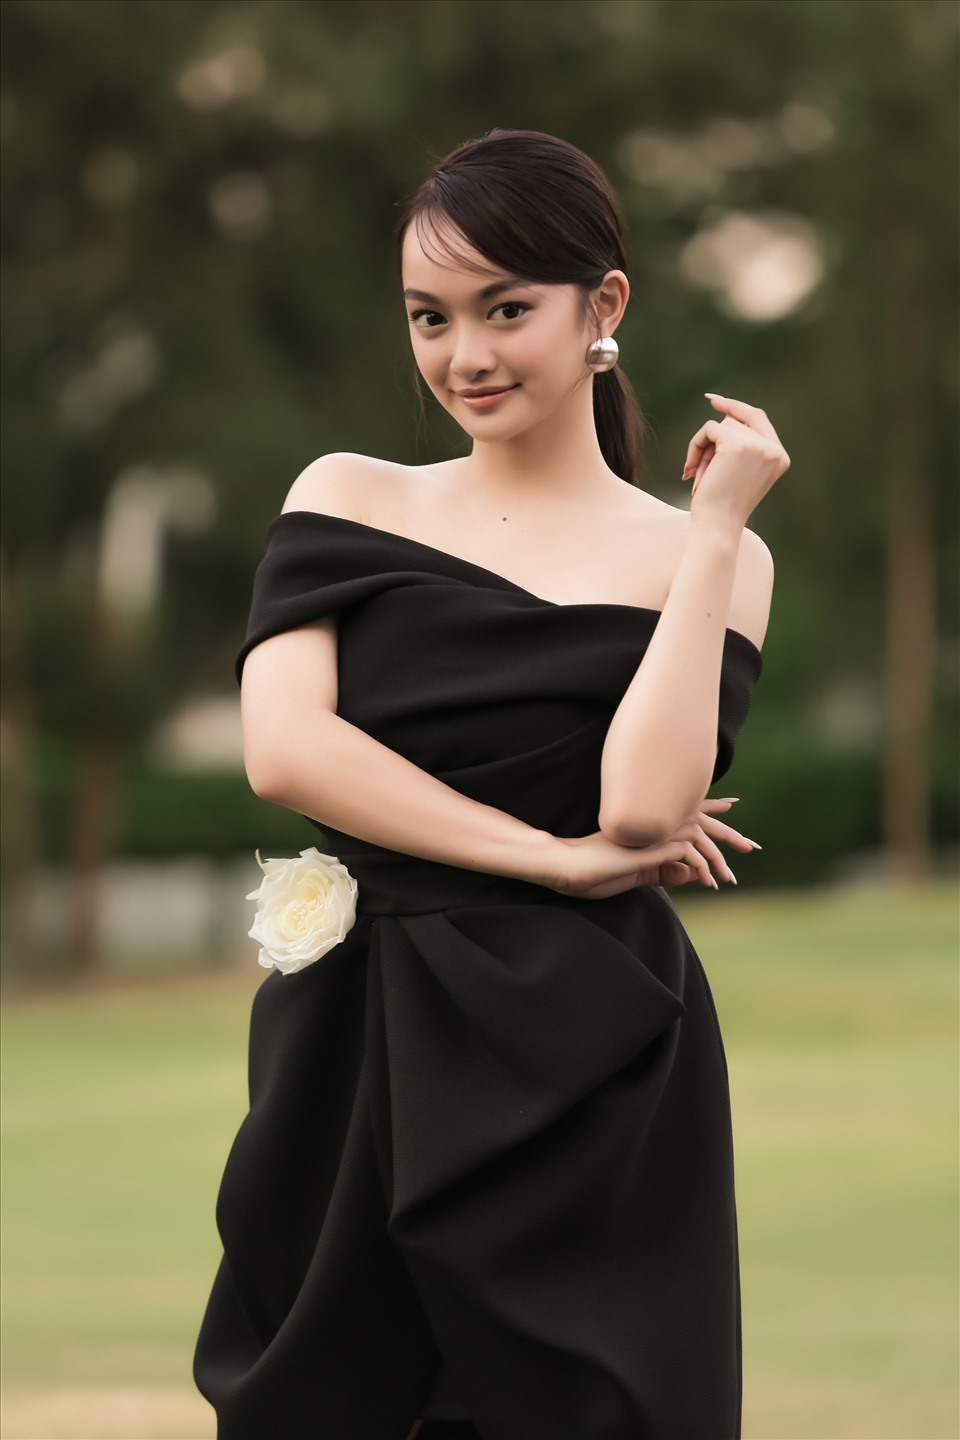 Kaity Nguyễn sang trọng trong bộ đầm đen.